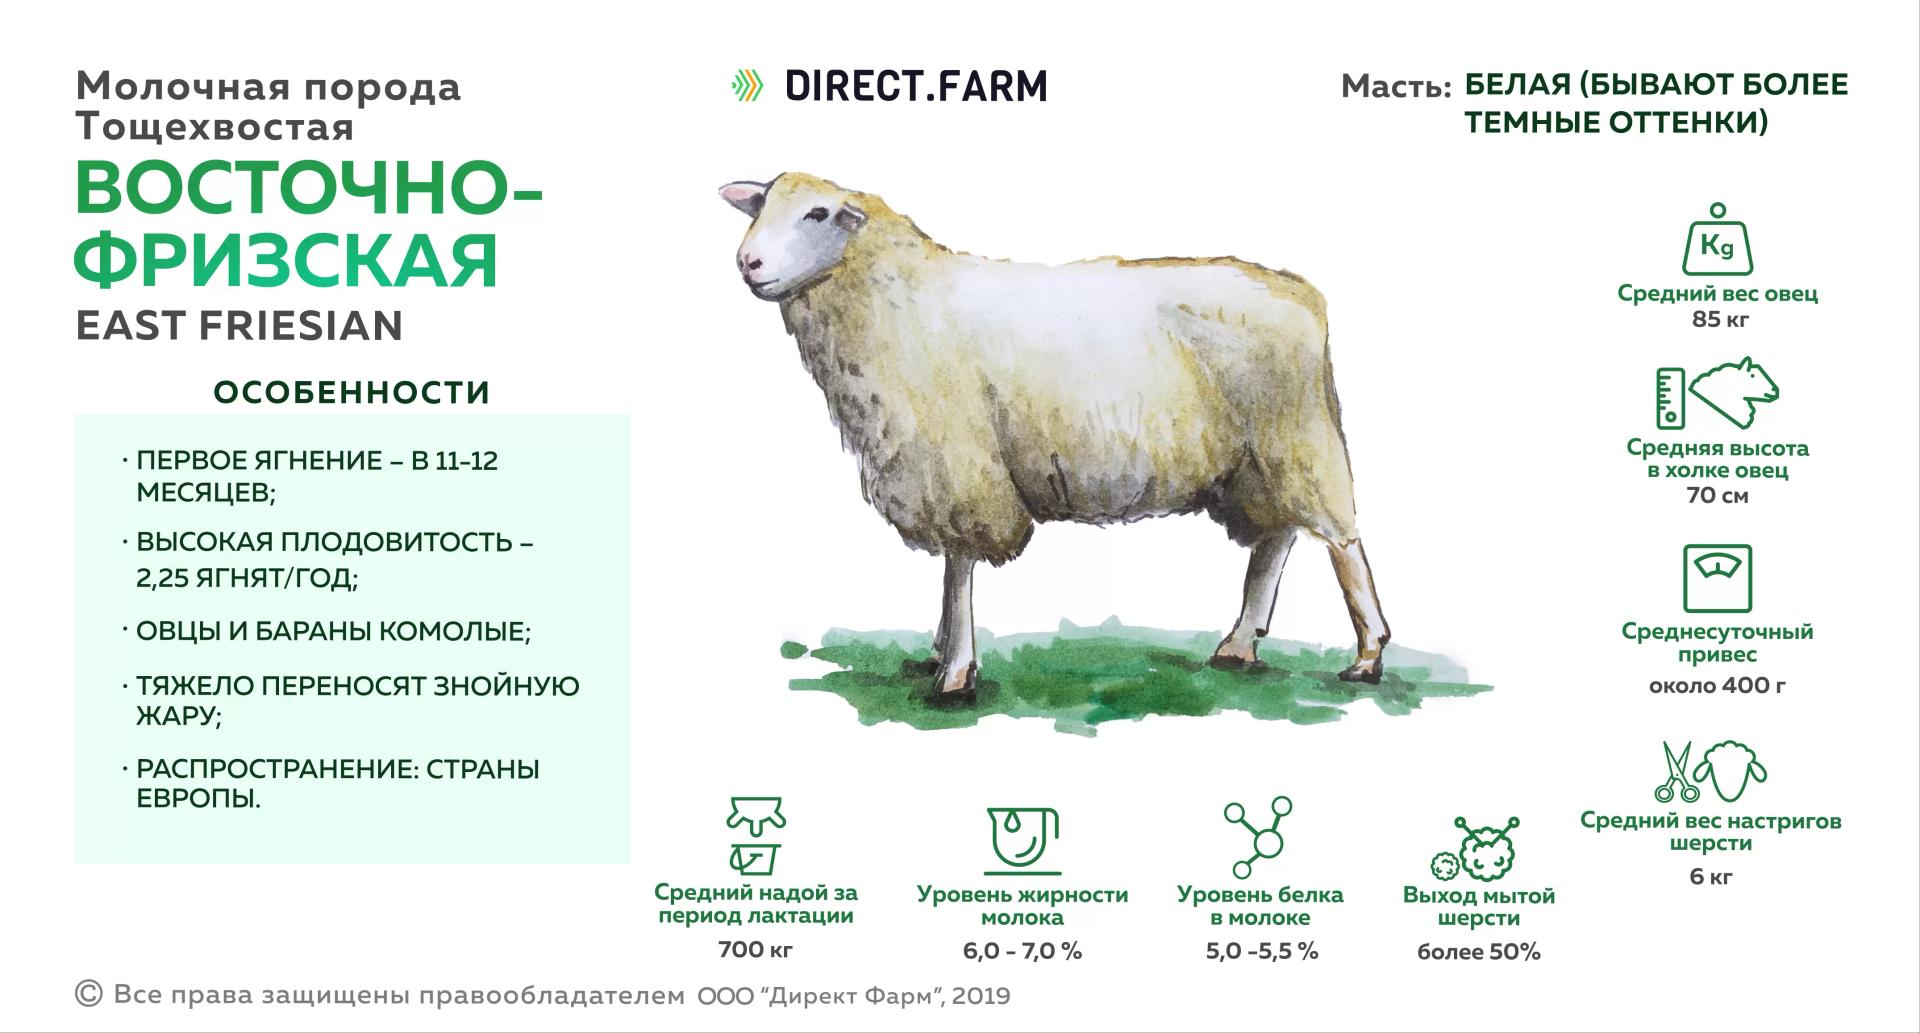 Восточно-фризская порода овец: масть, плодовитость, распространение,  содержание, преимущества